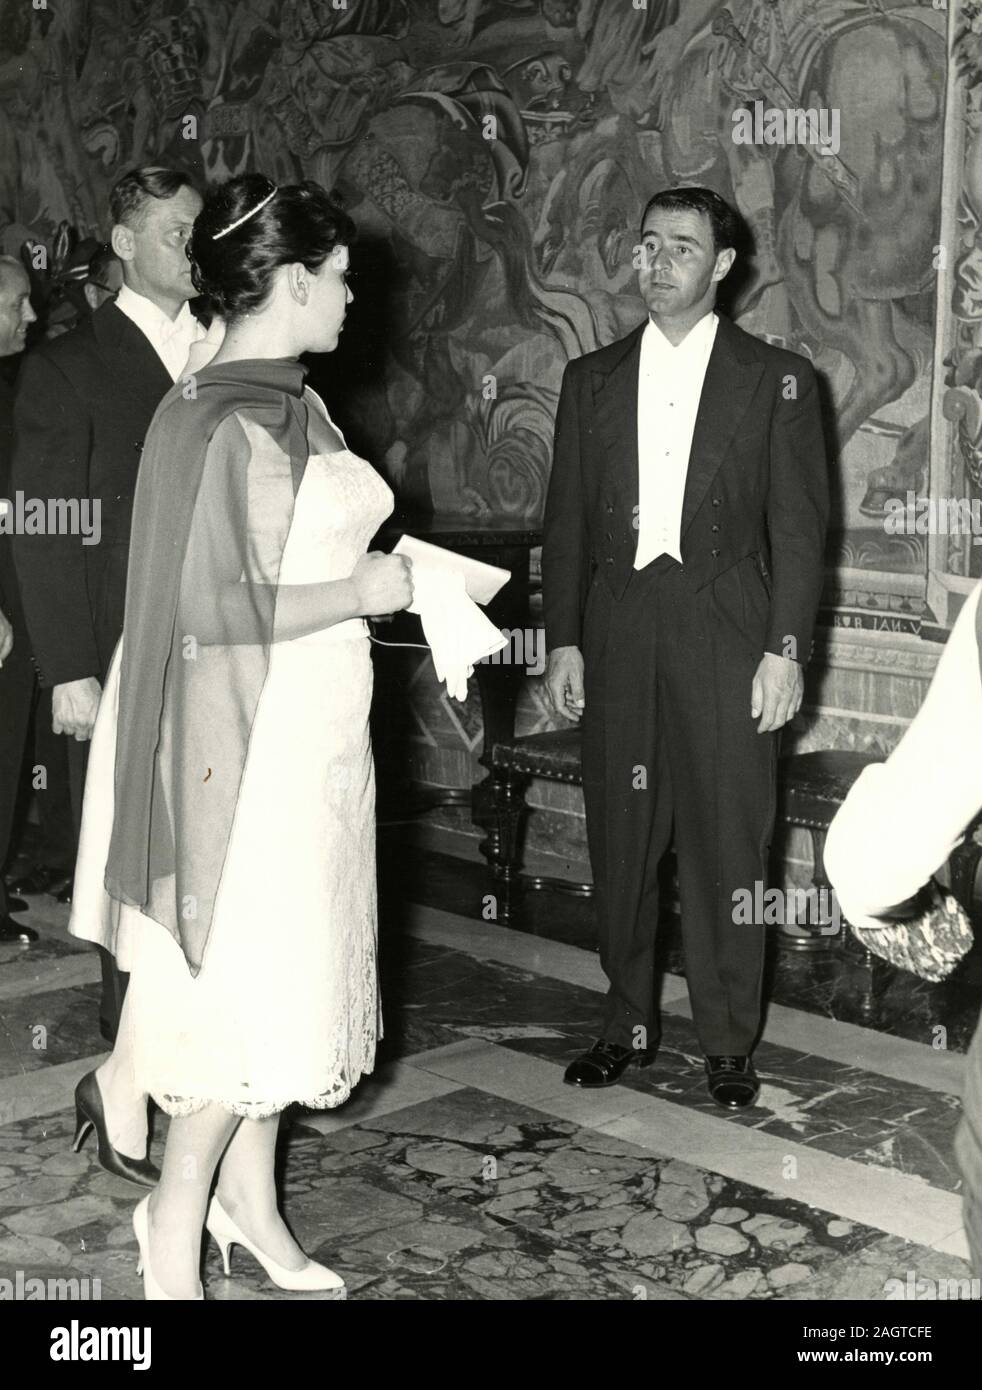 Homme politique italien enterpreneur et Vittorio Marzotto et son épouse lors d'une réception, Rome, Italie 1960 Banque D'Images